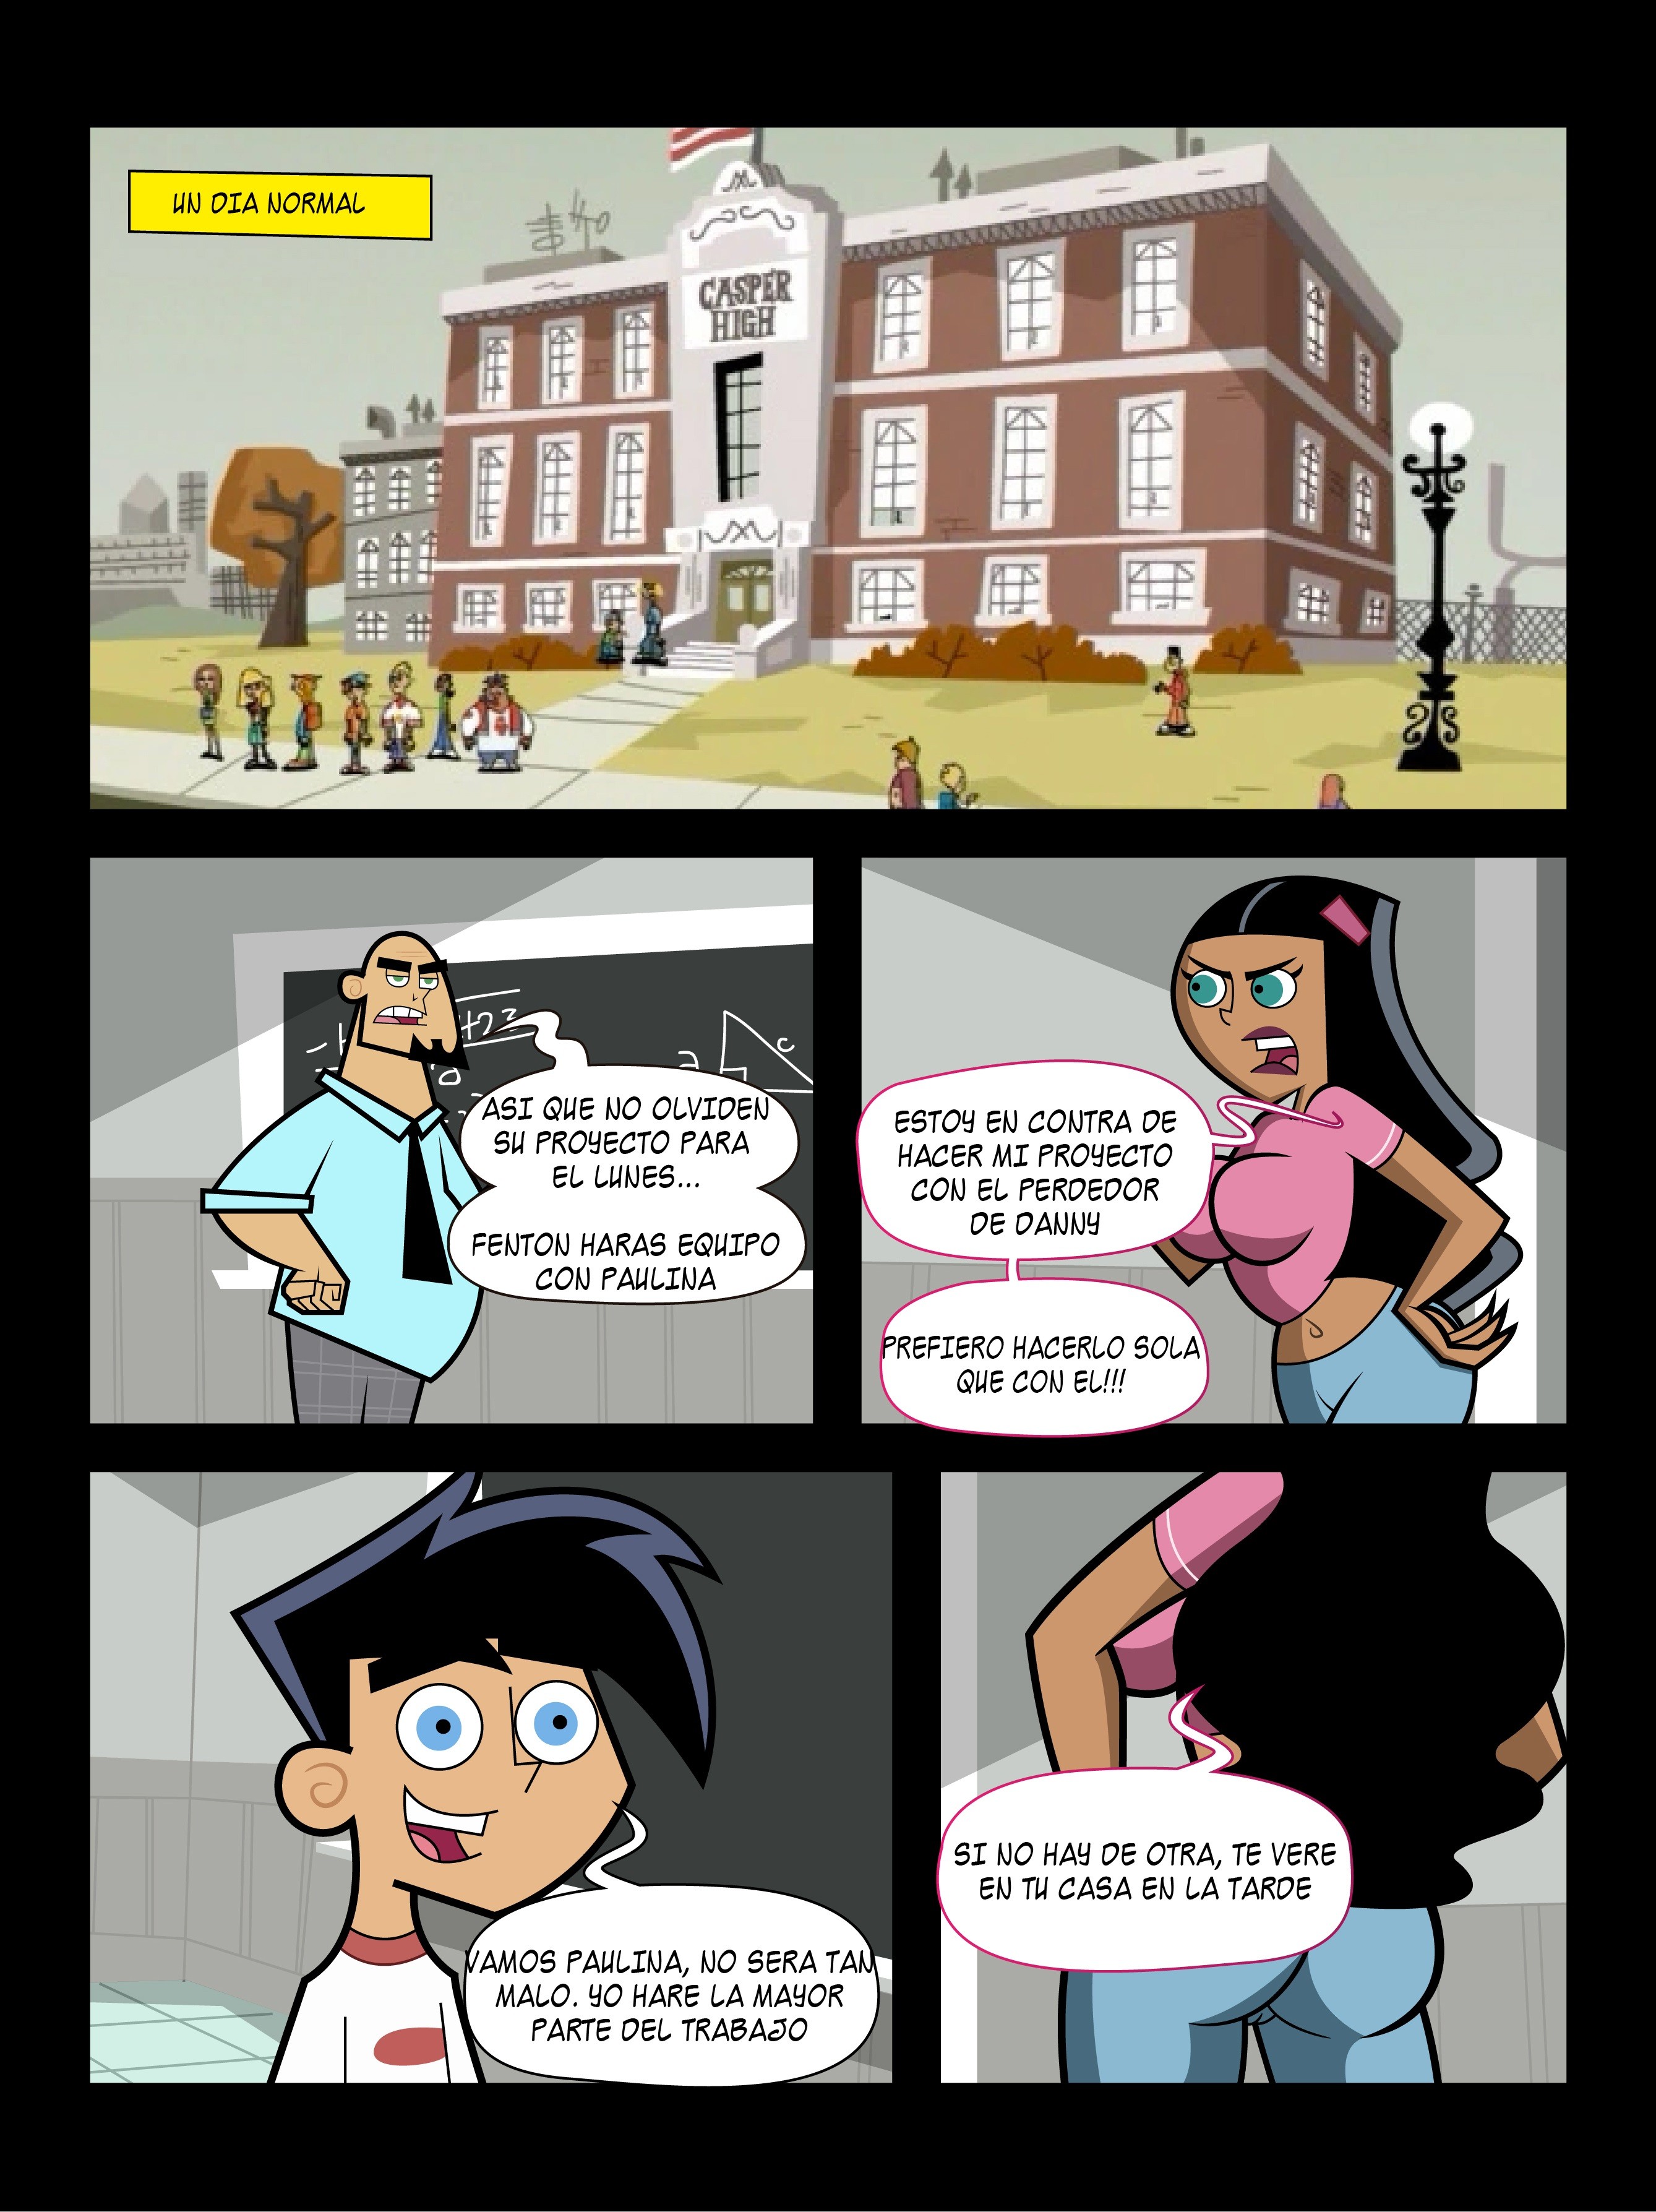 the homework mexicomix cartoon porn download free comics 1